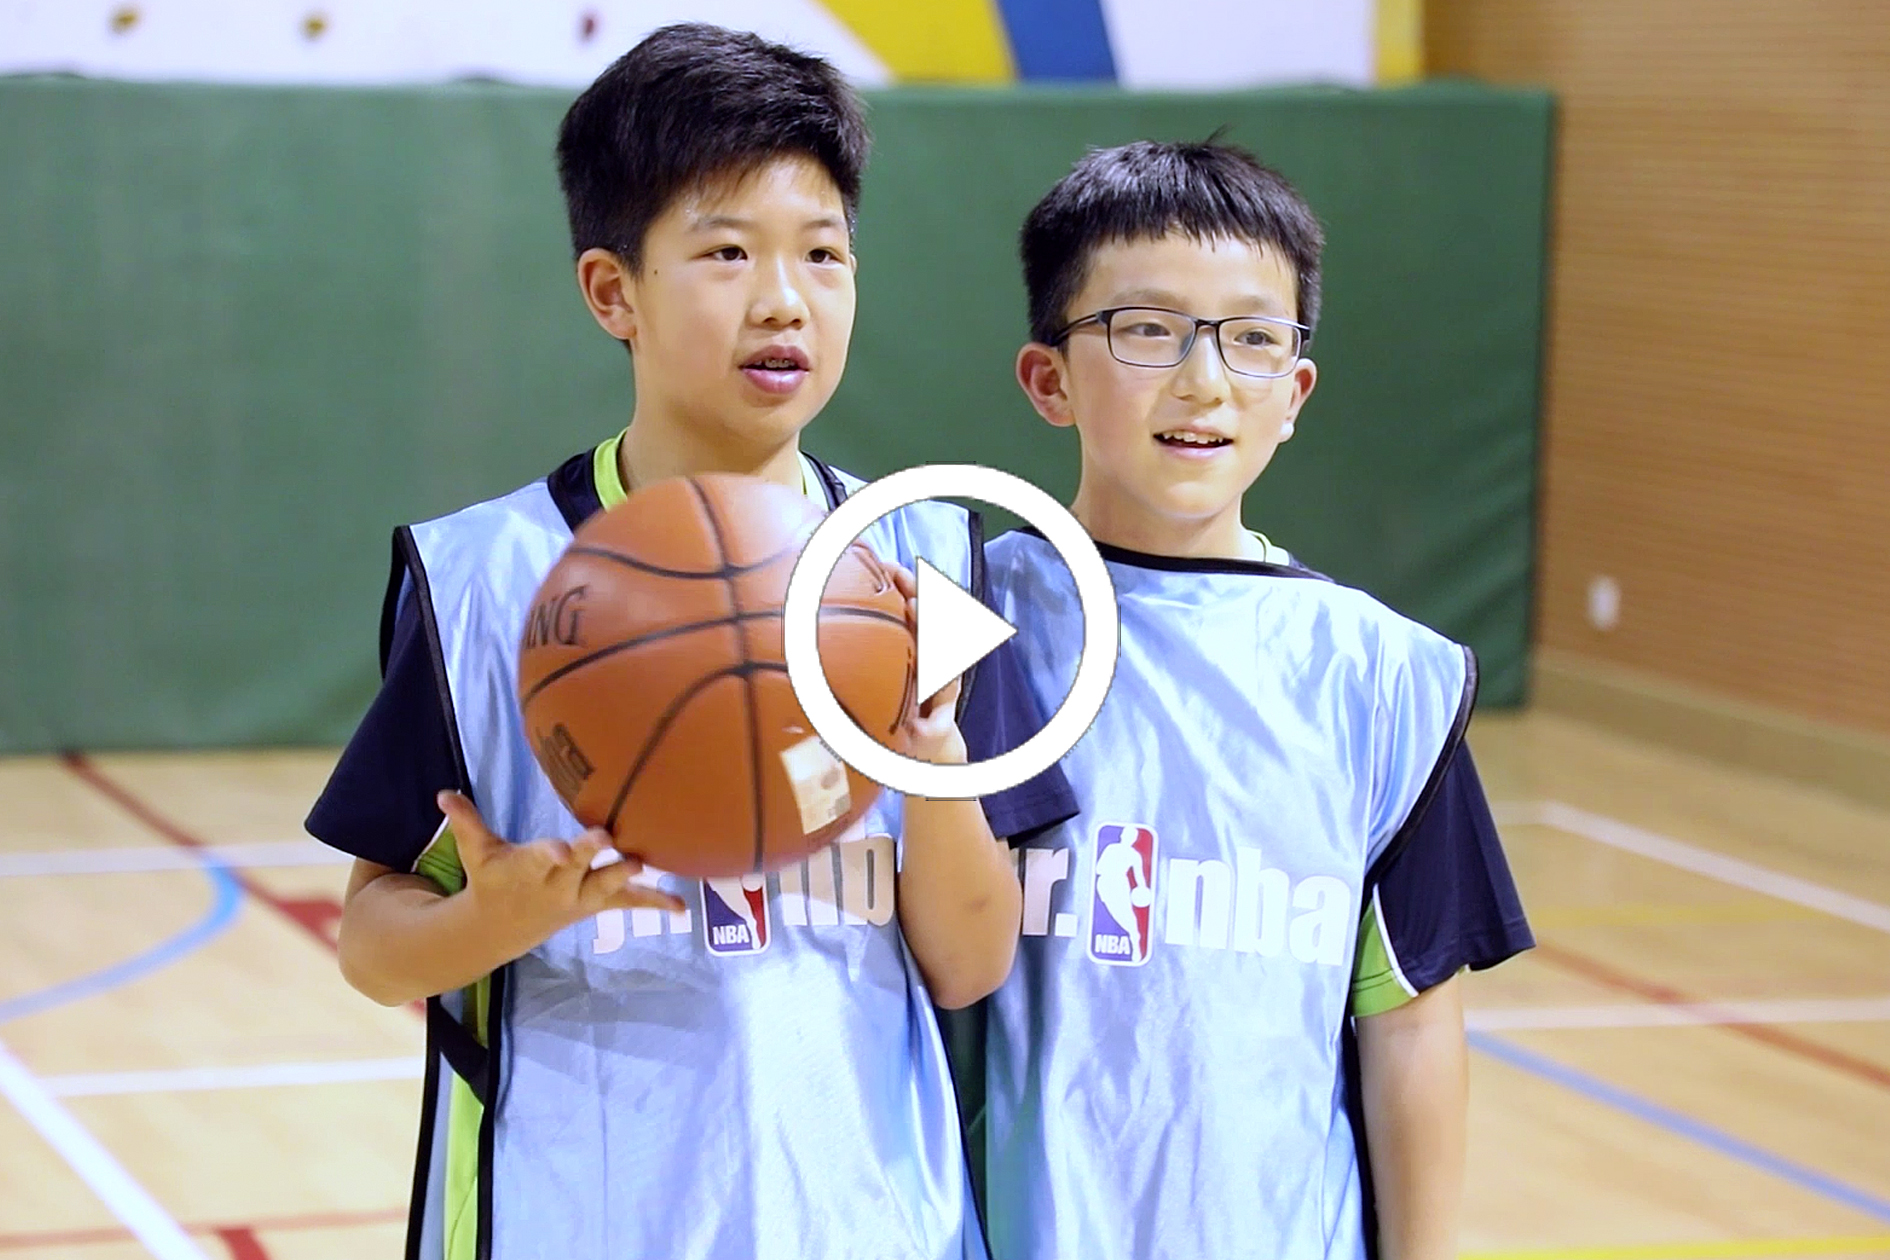 HQ-Basketball-video-teaser.jpg